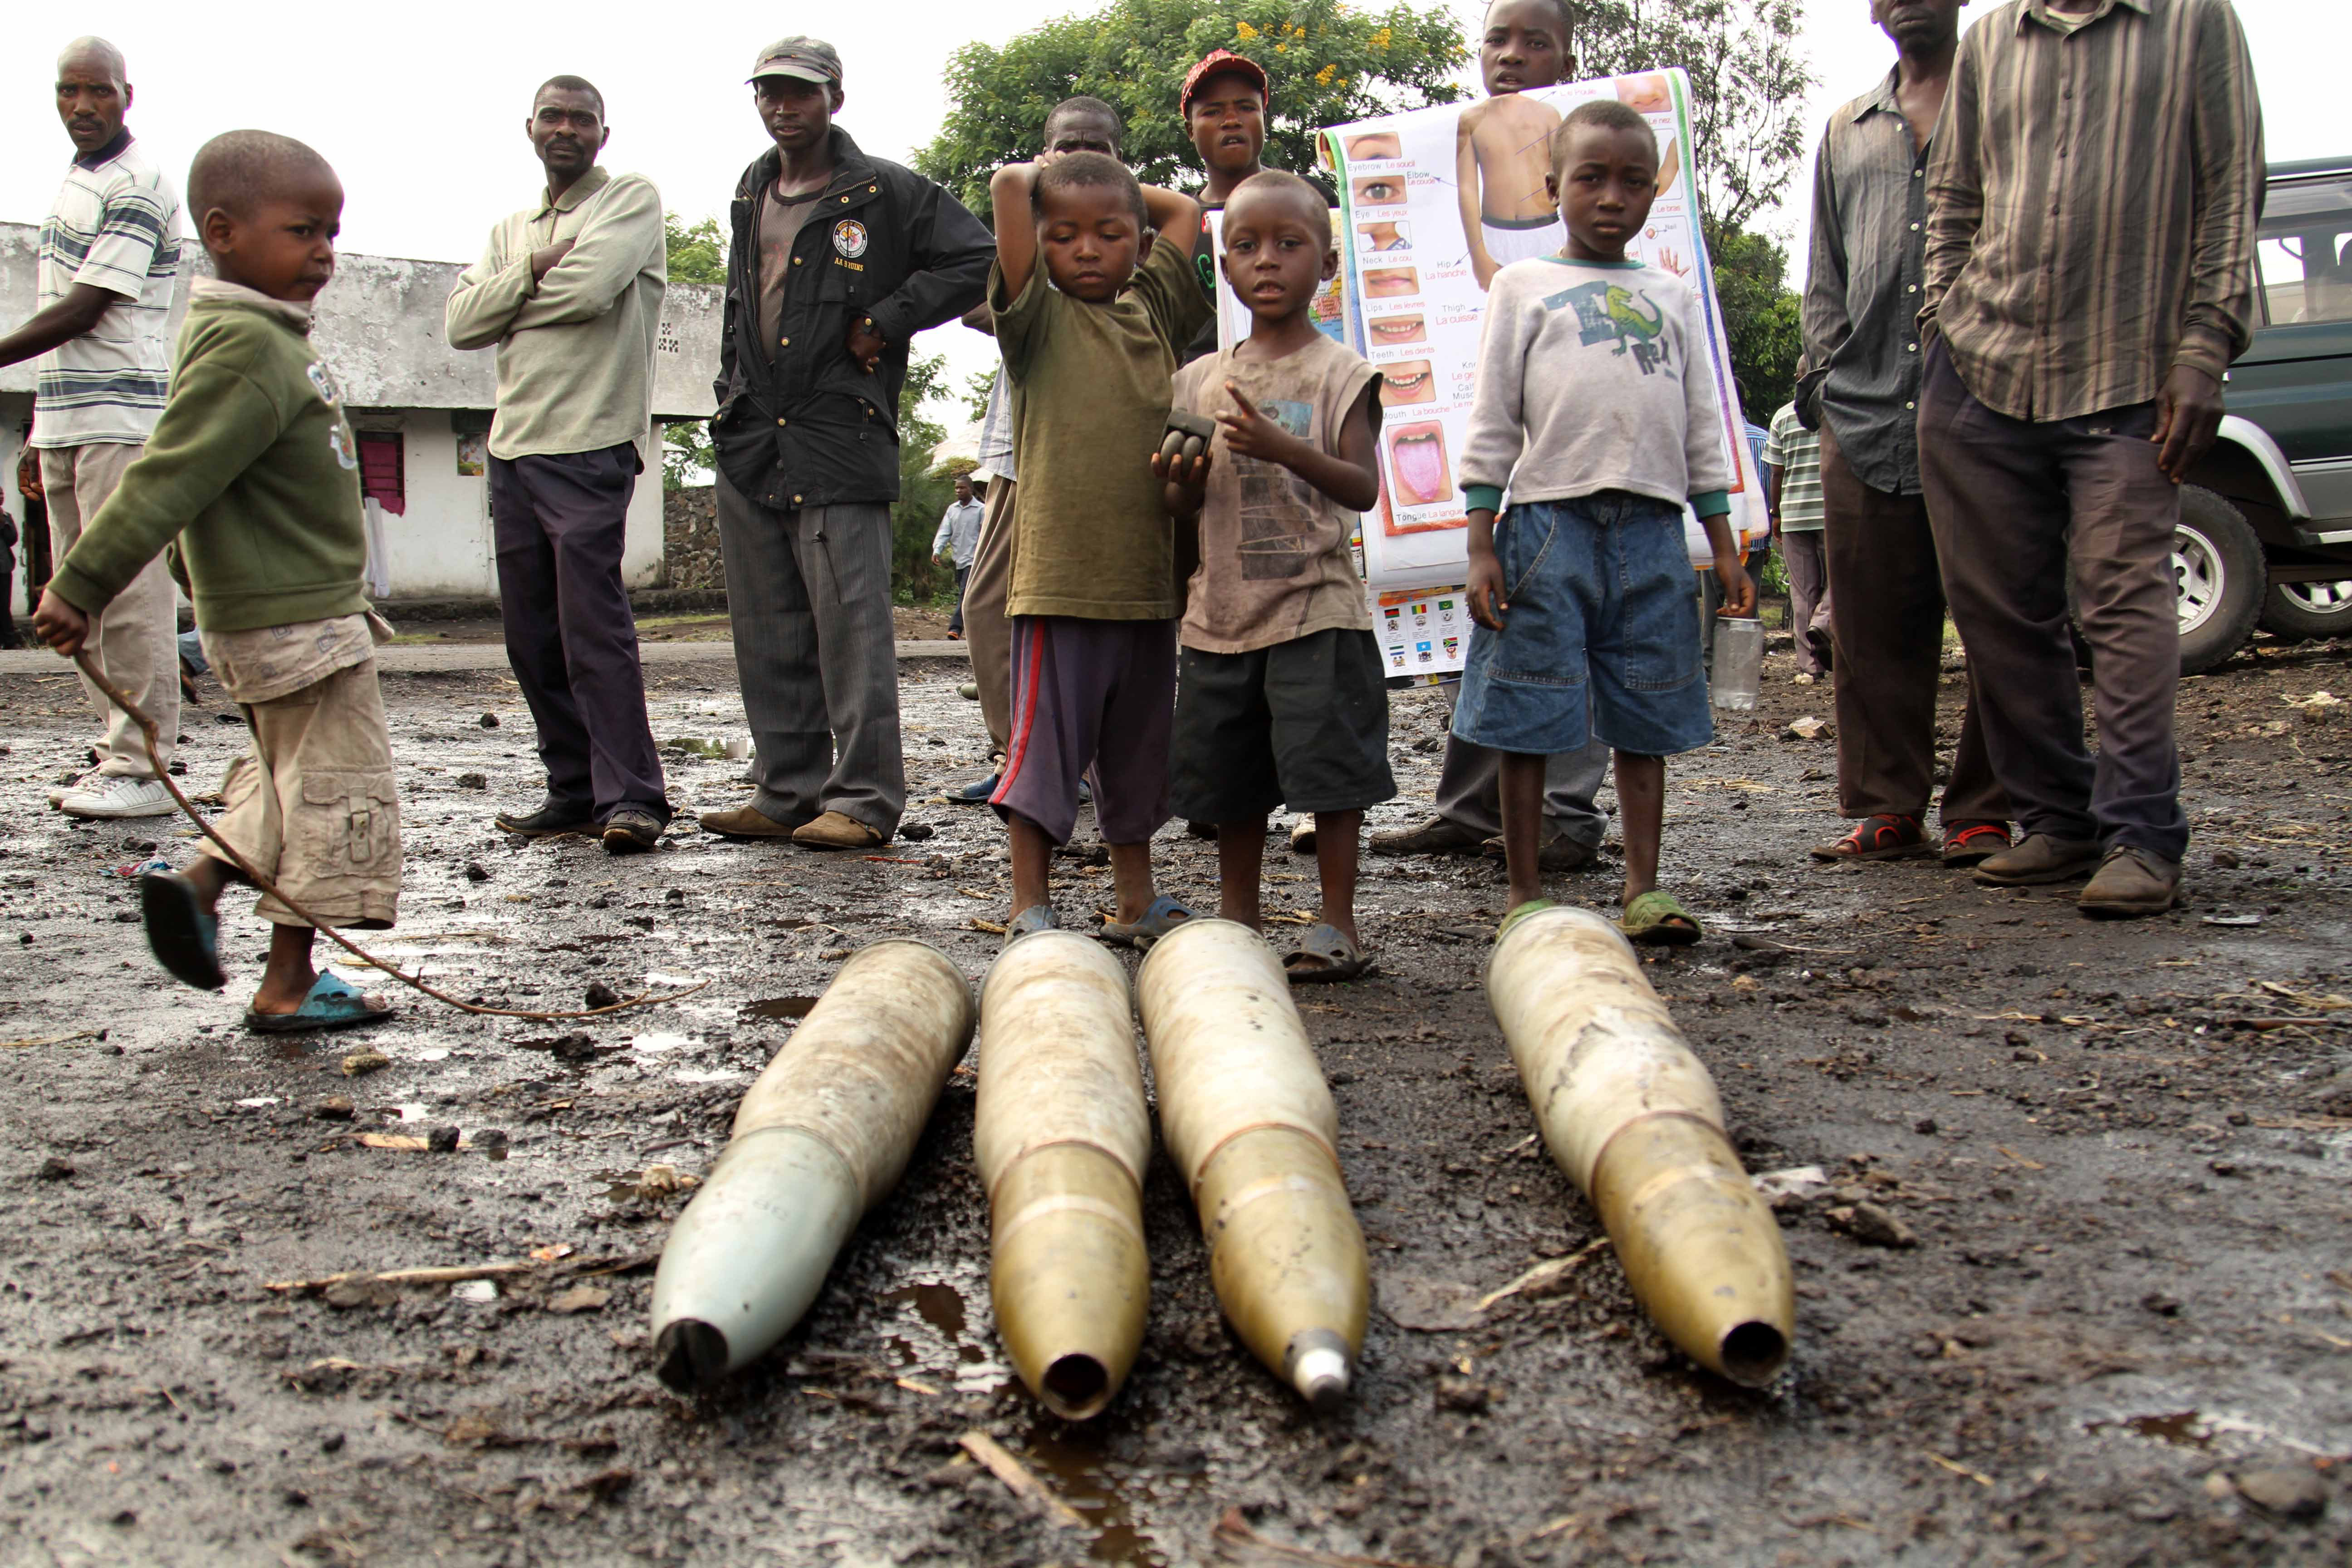 Field Dispatch: Civilians Under Siege in Goma